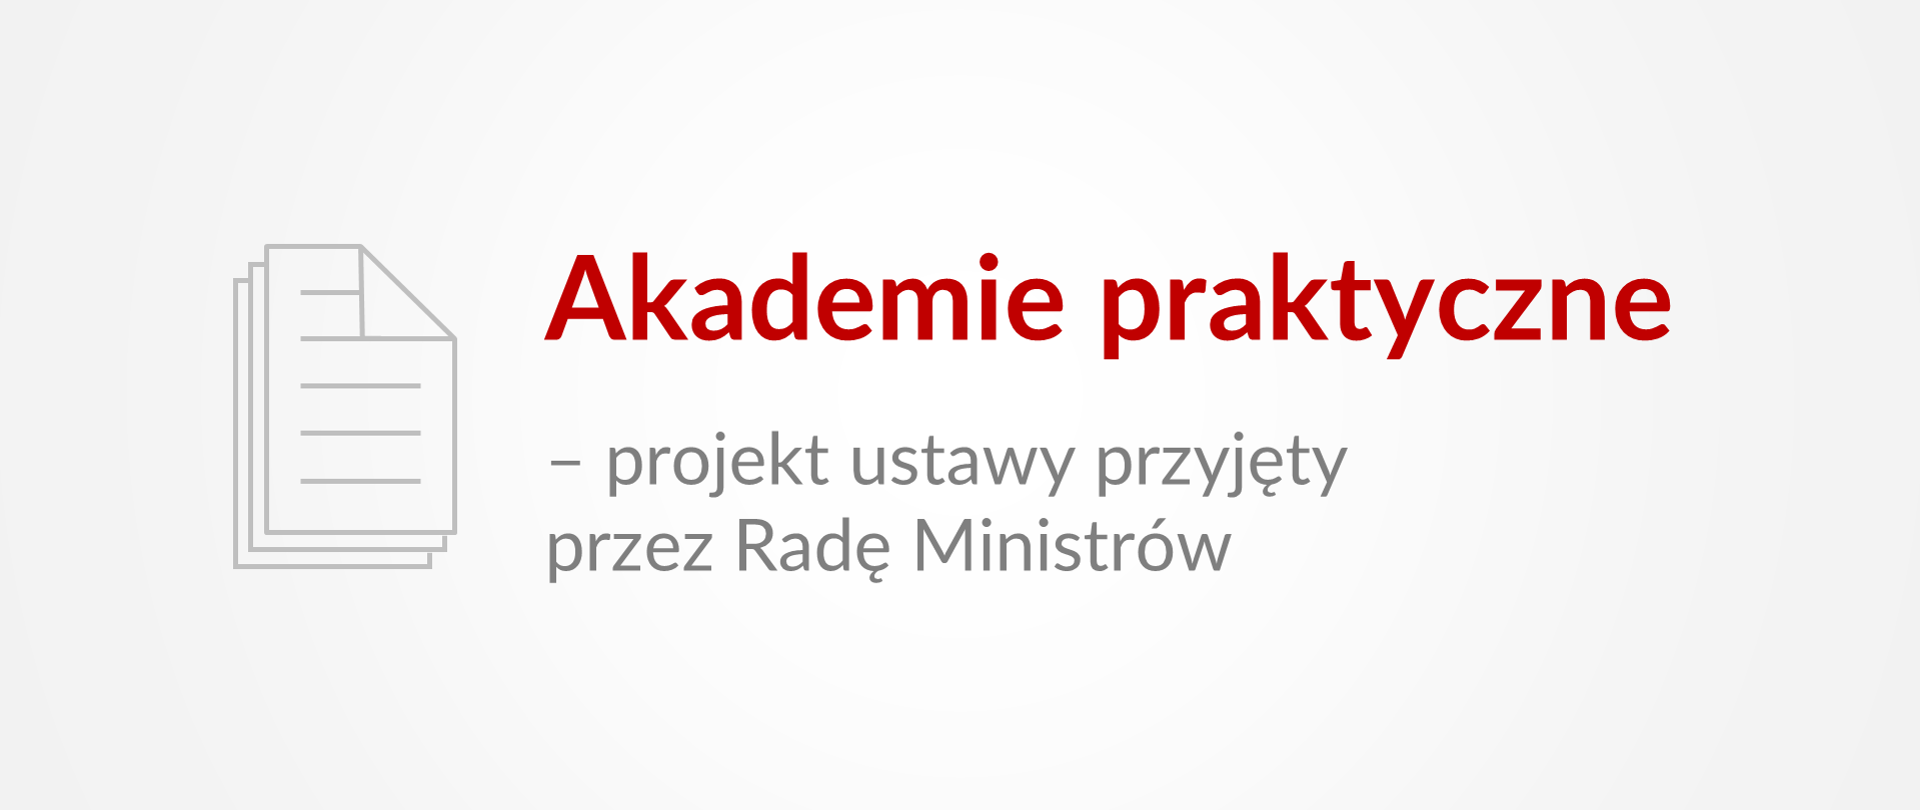 Grafika z tekstem: "Akademie praktyczne – projekt ustawy przyjęty przez Radę Ministrów"